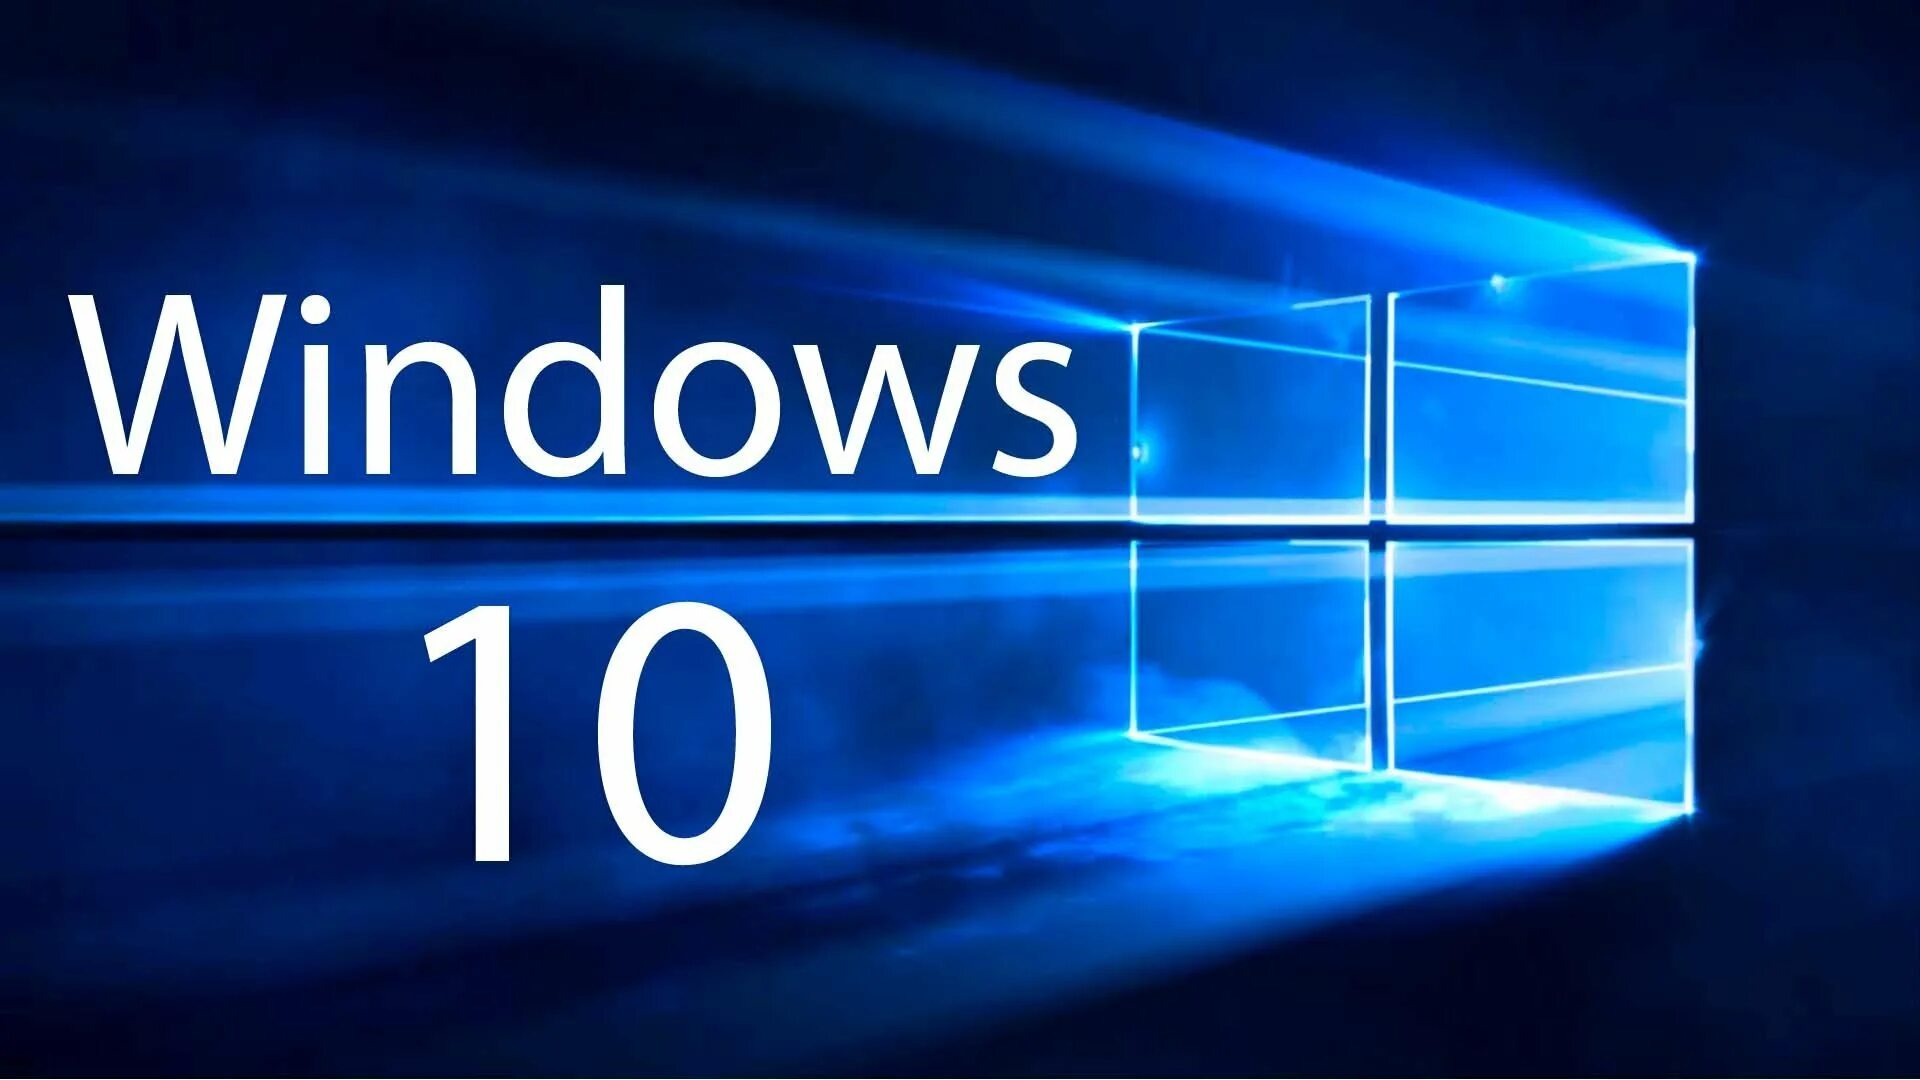 Производитель windows 10. Microsoft Windows 10. ОС виндовс 10. Логотип виндовс 10. Картинки виндовс 10.